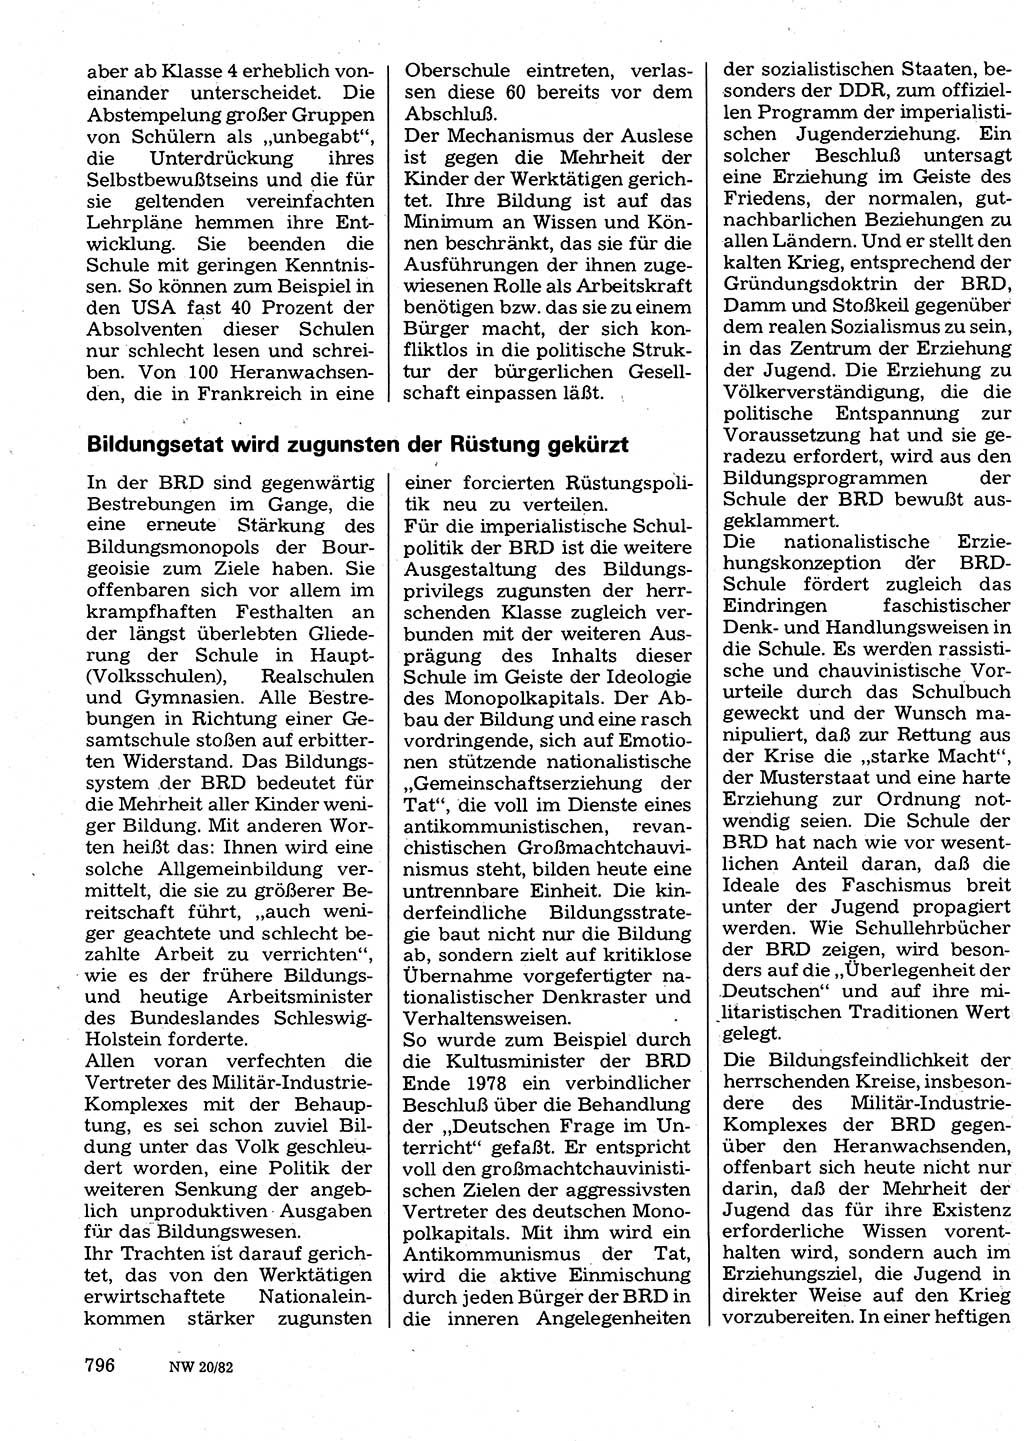 Neuer Weg (NW), Organ des Zentralkomitees (ZK) der SED (Sozialistische Einheitspartei Deutschlands) für Fragen des Parteilebens, 37. Jahrgang [Deutsche Demokratische Republik (DDR)] 1982, Seite 796 (NW ZK SED DDR 1982, S. 796)